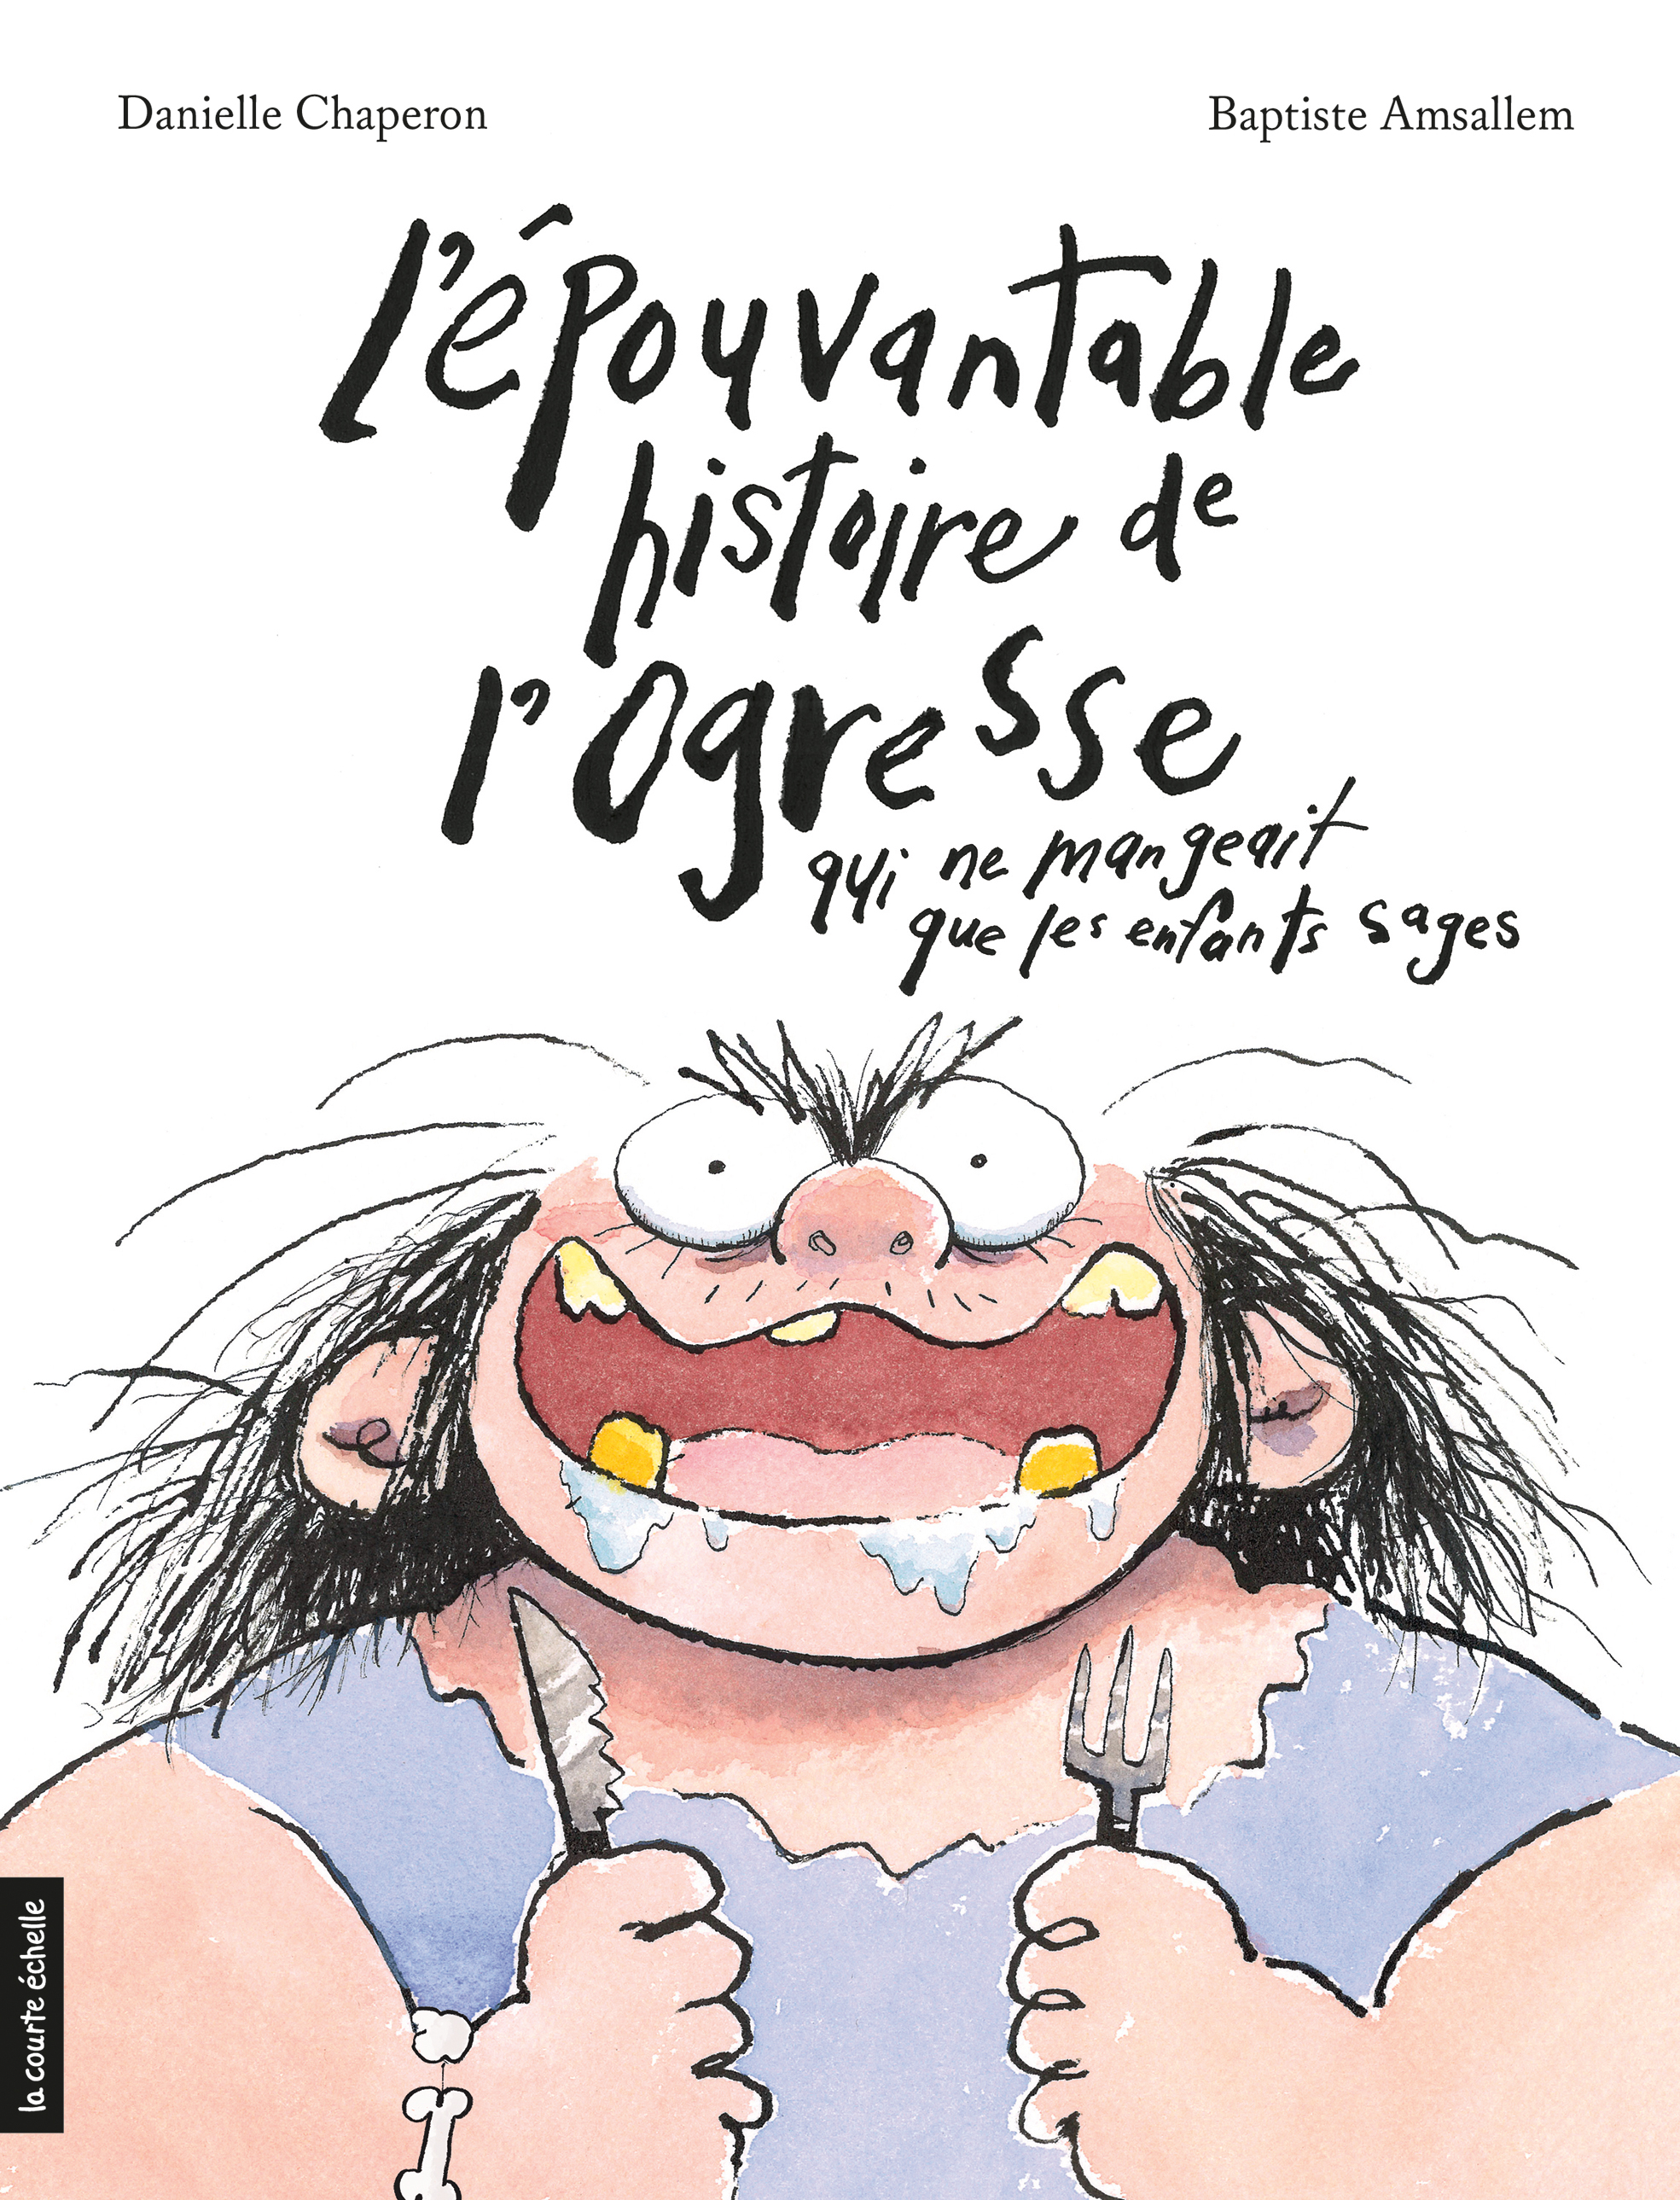 Book cover of ÉPOUVANTABLE HISTOIRE DE L'OGRESSE QUI